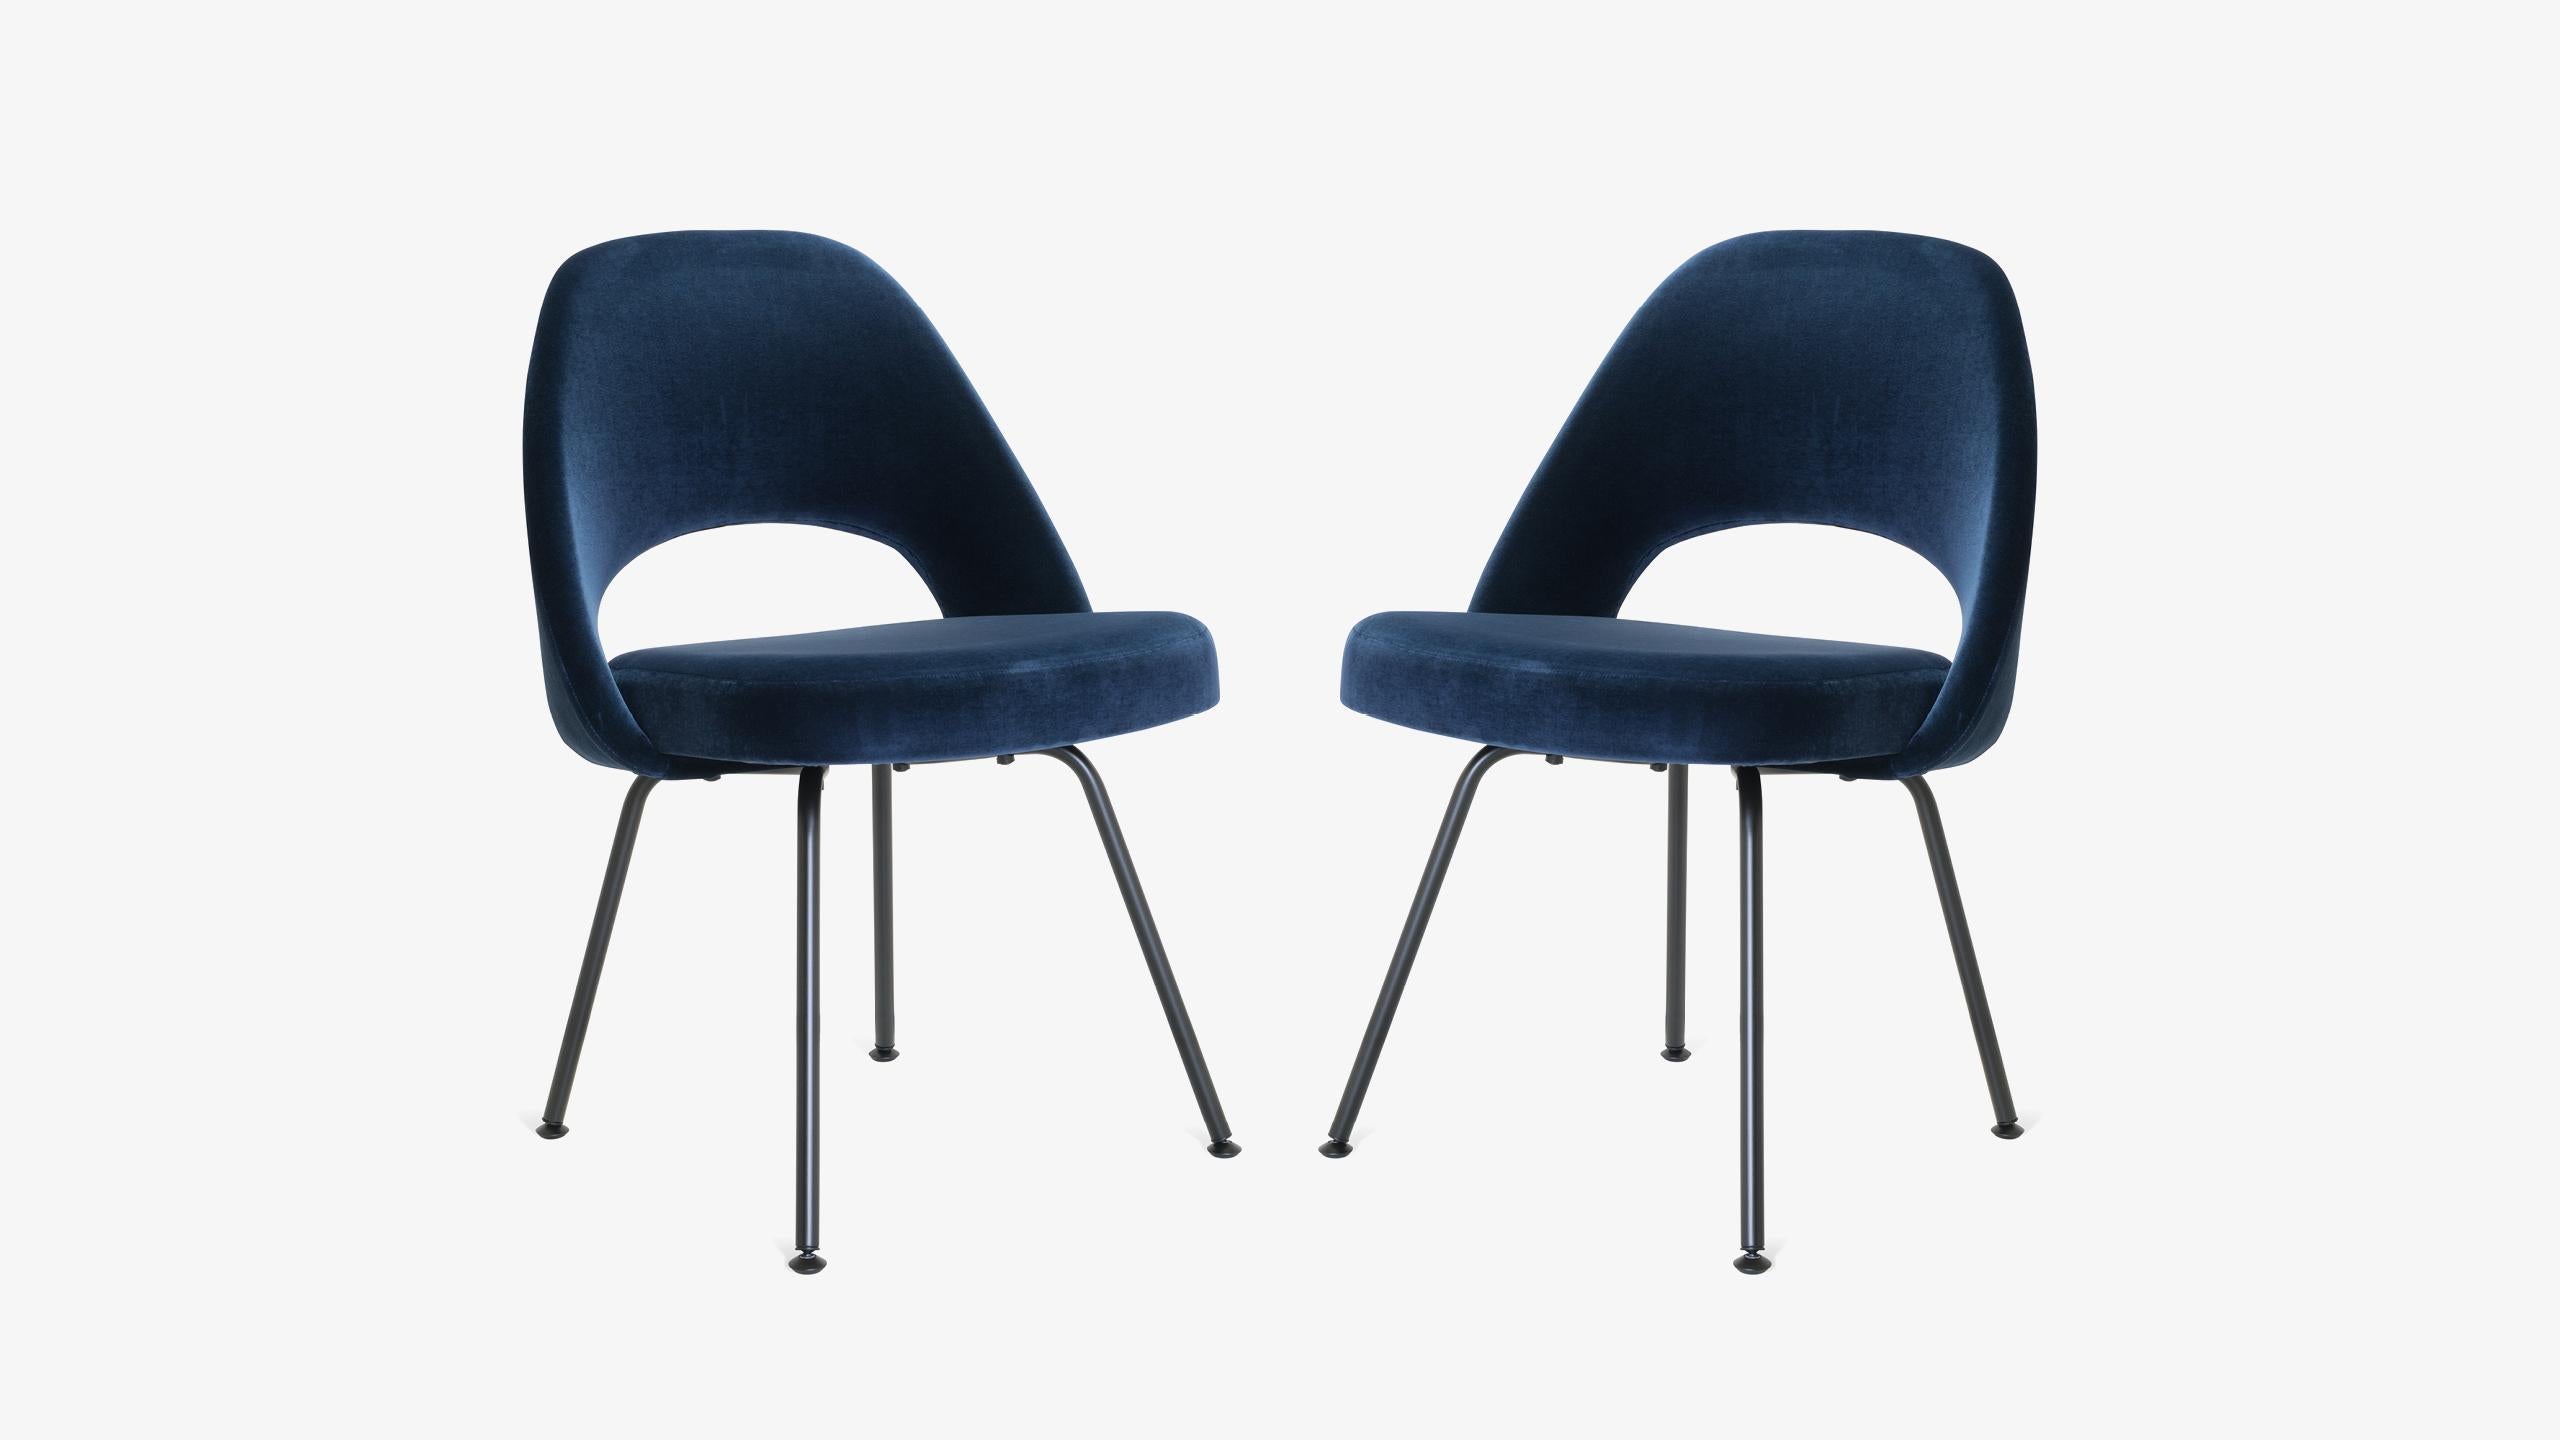 Depuis des années, nous restaurons des fauteuils Saarinen dans tous les tissus possibles et imaginables, dans notre propre atelier. Des artisans qualifiés redonnent vie à chaque chaise pour qu'elle vive pour les générations à venir. Aujourd'hui,